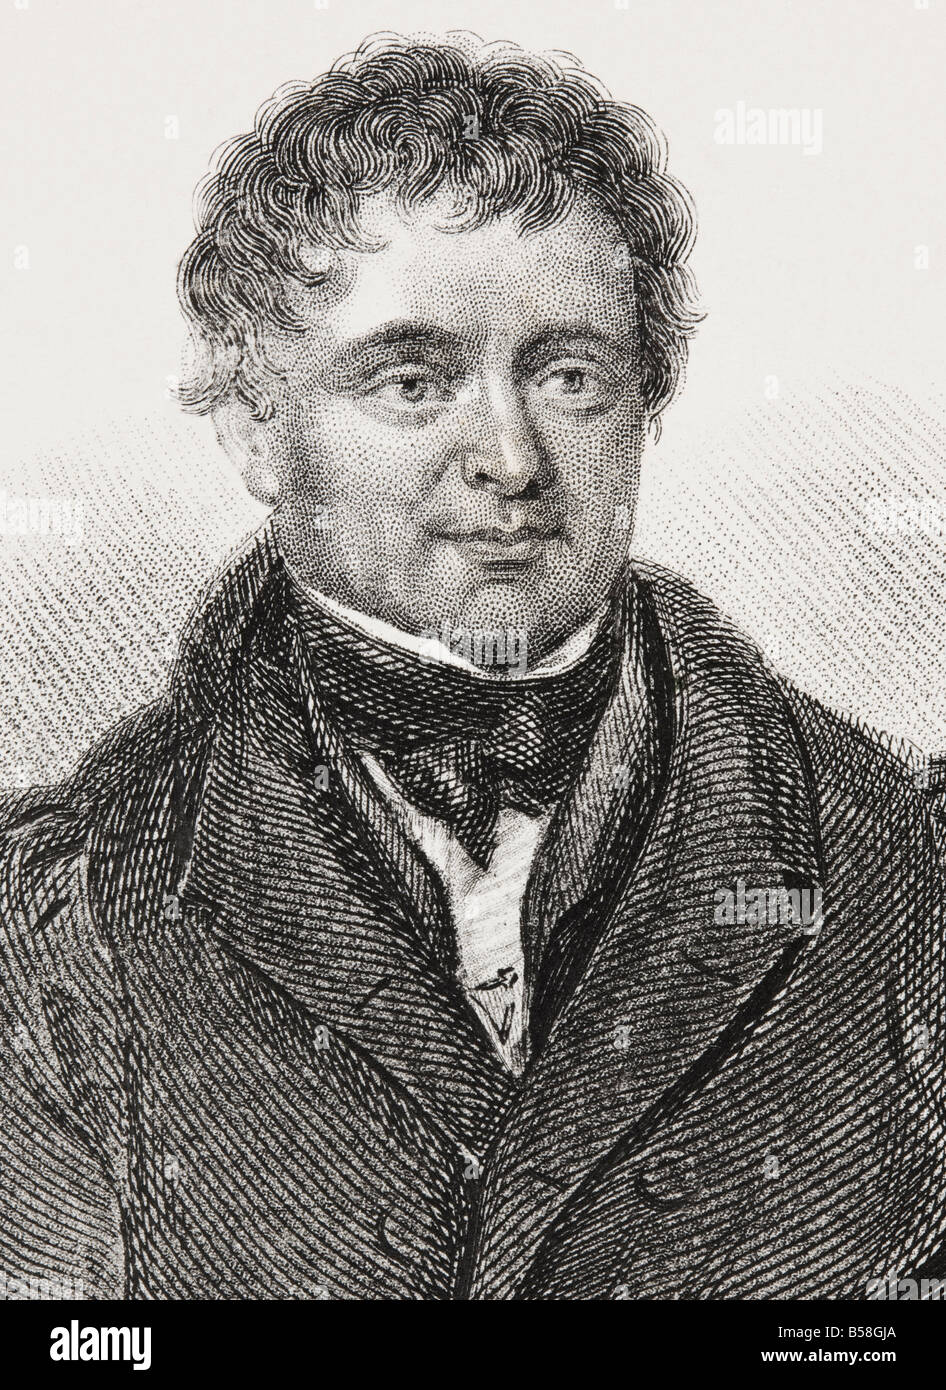 Daniel O'Connell, Bename The Liberator, 1775 - 1847. Erste der großen irischen Führer des 19.. Jahrhunderts im britischen Unterhaus. Stockfoto